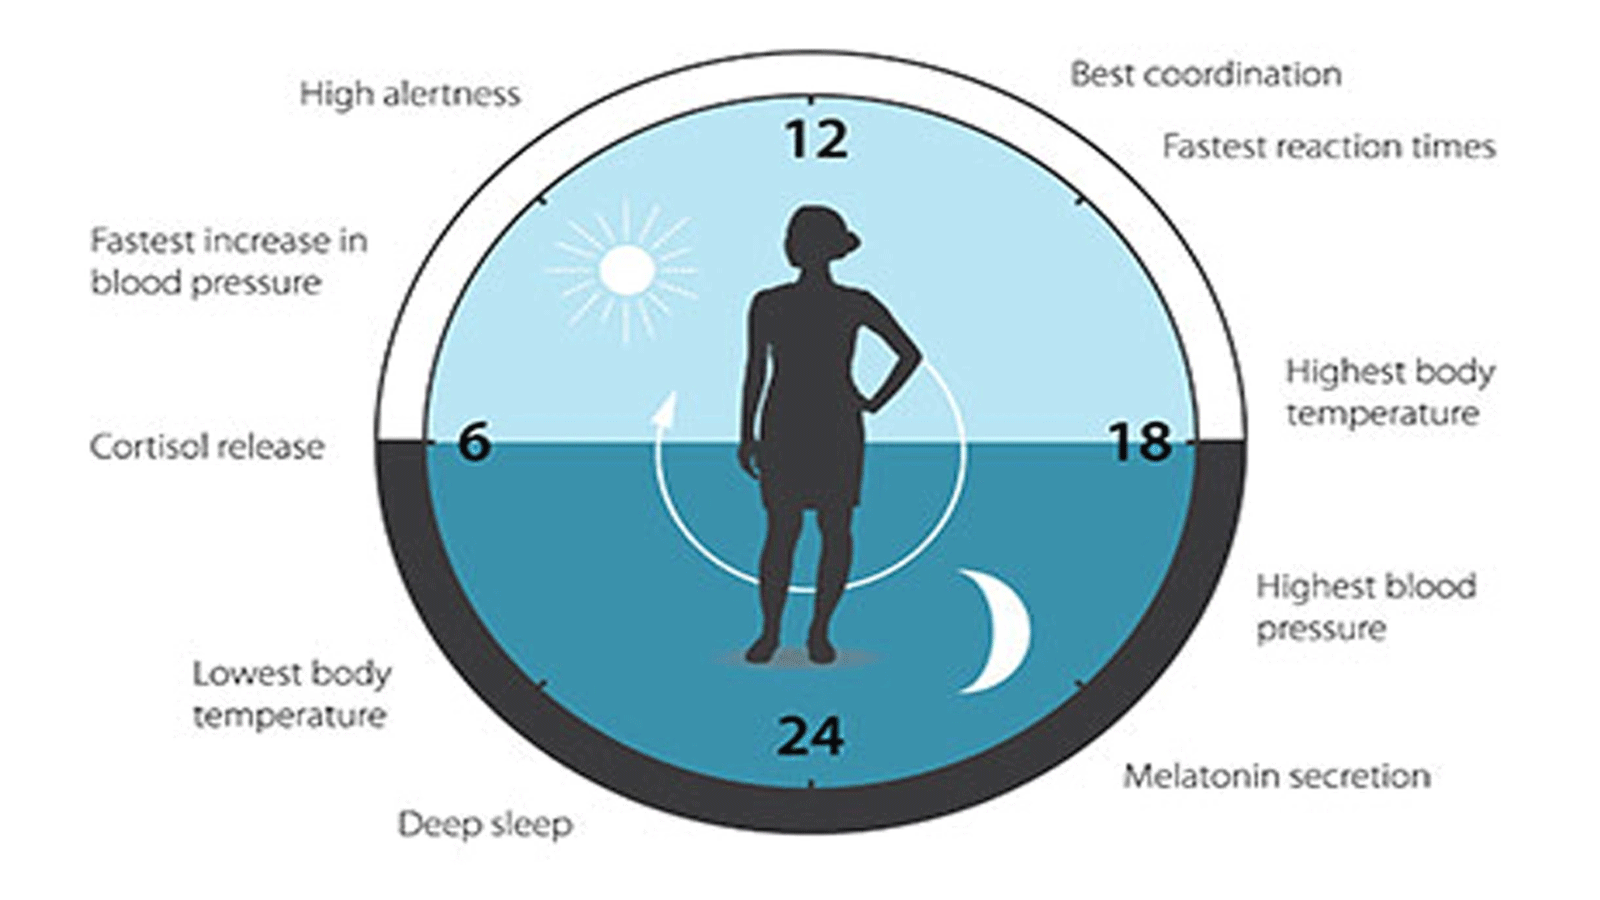 الساعة البيولوجية تساعد على تنظيم أنماط النوم وسلوك التغذية وإفراز الهرمونات وضغط الدم ودرجة حرارة الجسم. (مركز جائزة نوبل)